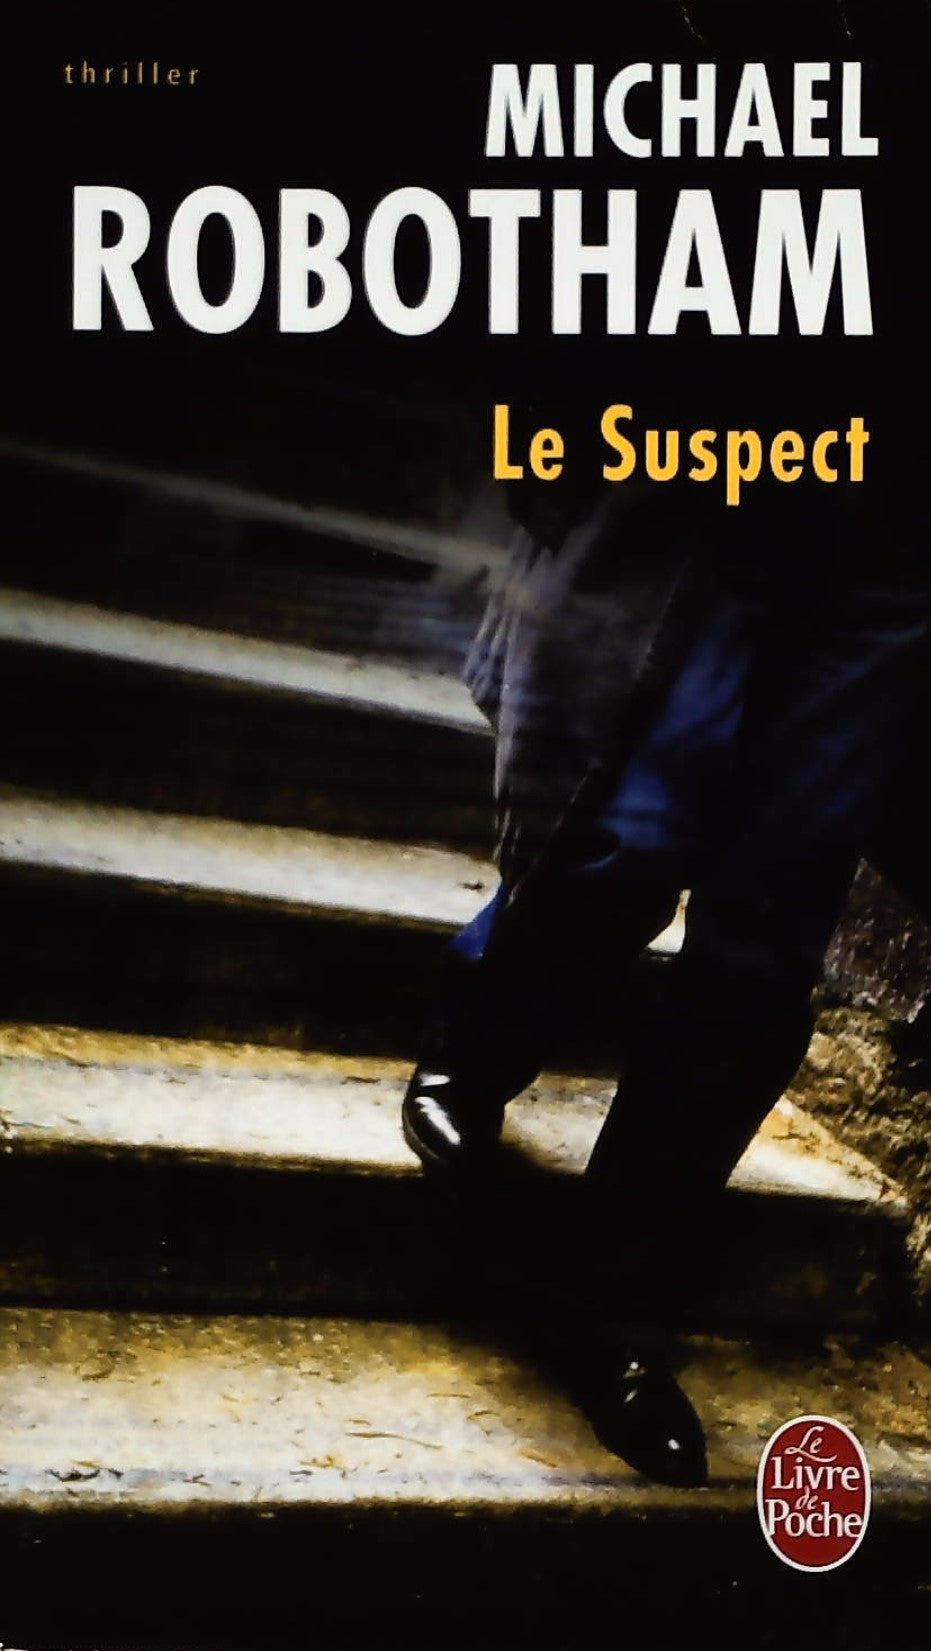 Livre ISBN 2253116106 Le suspect (Michael Robotham)